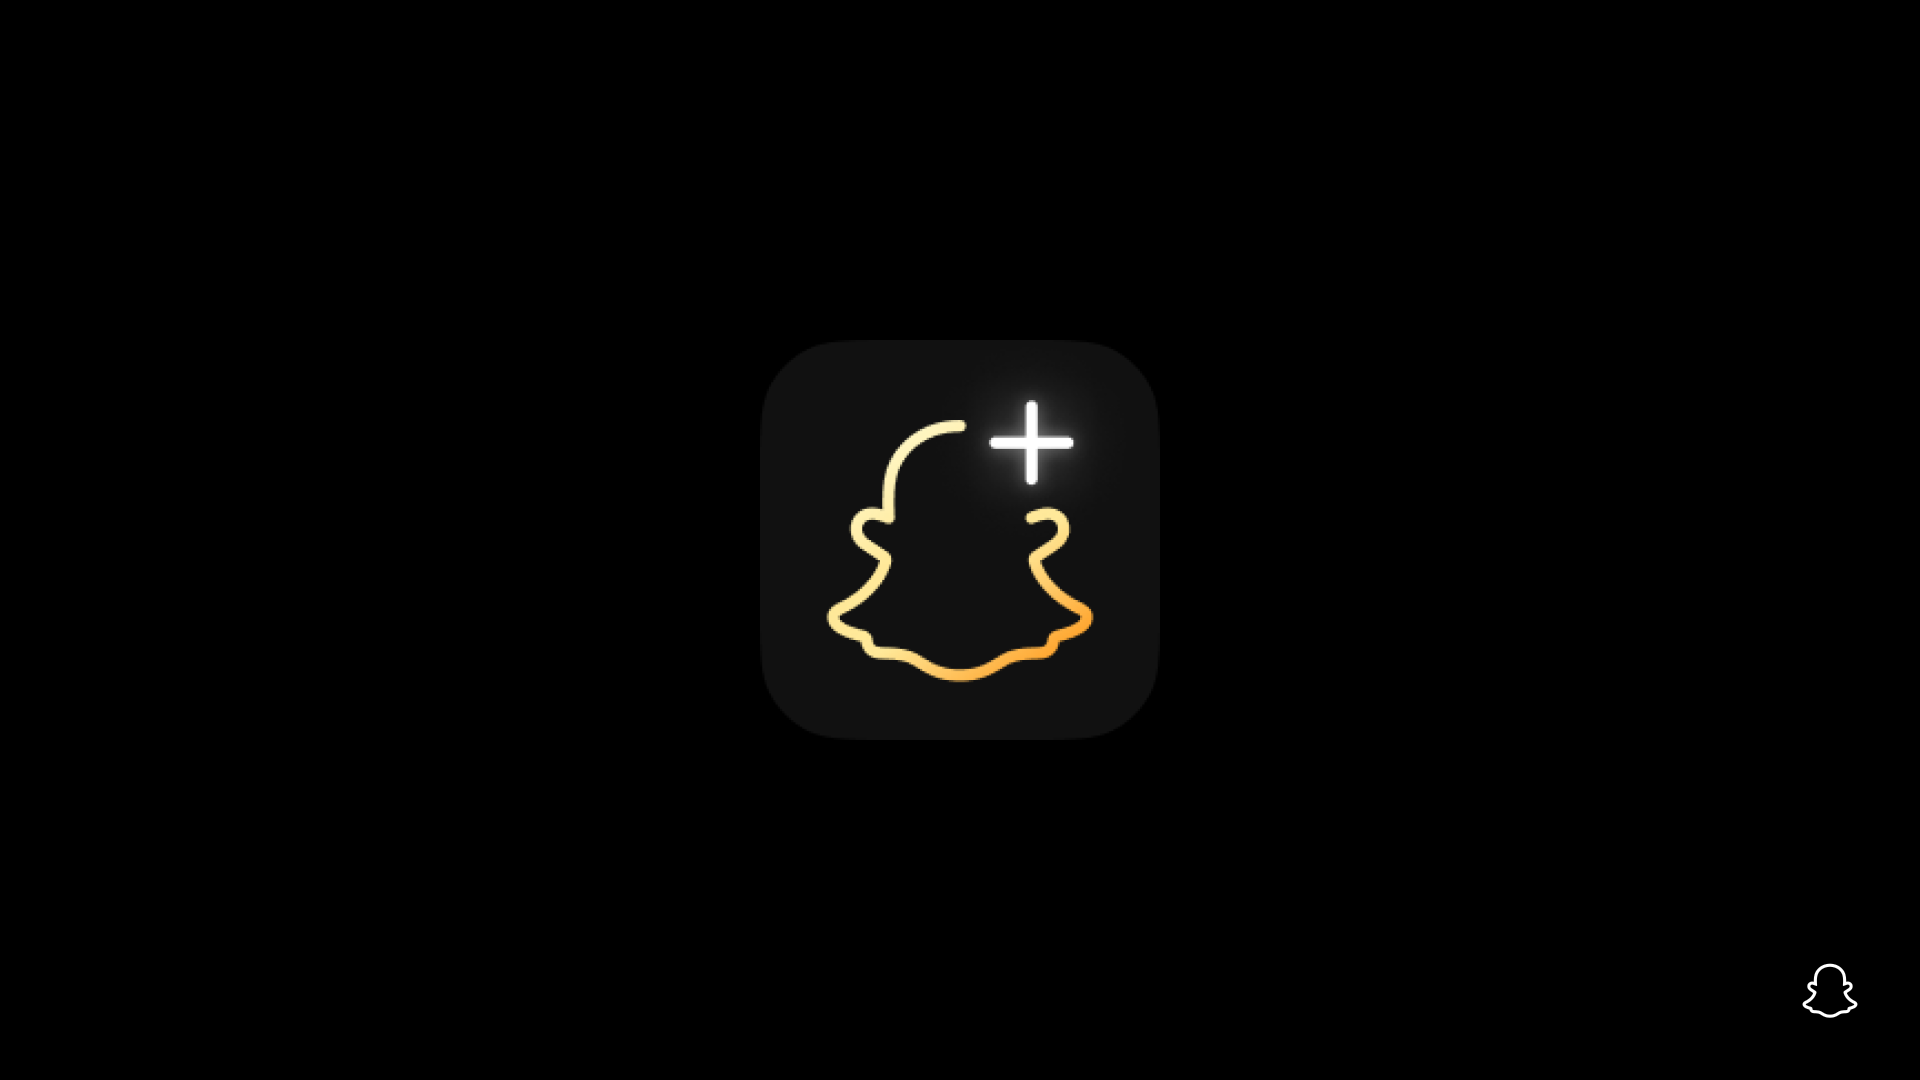 Introducing Snapchat+